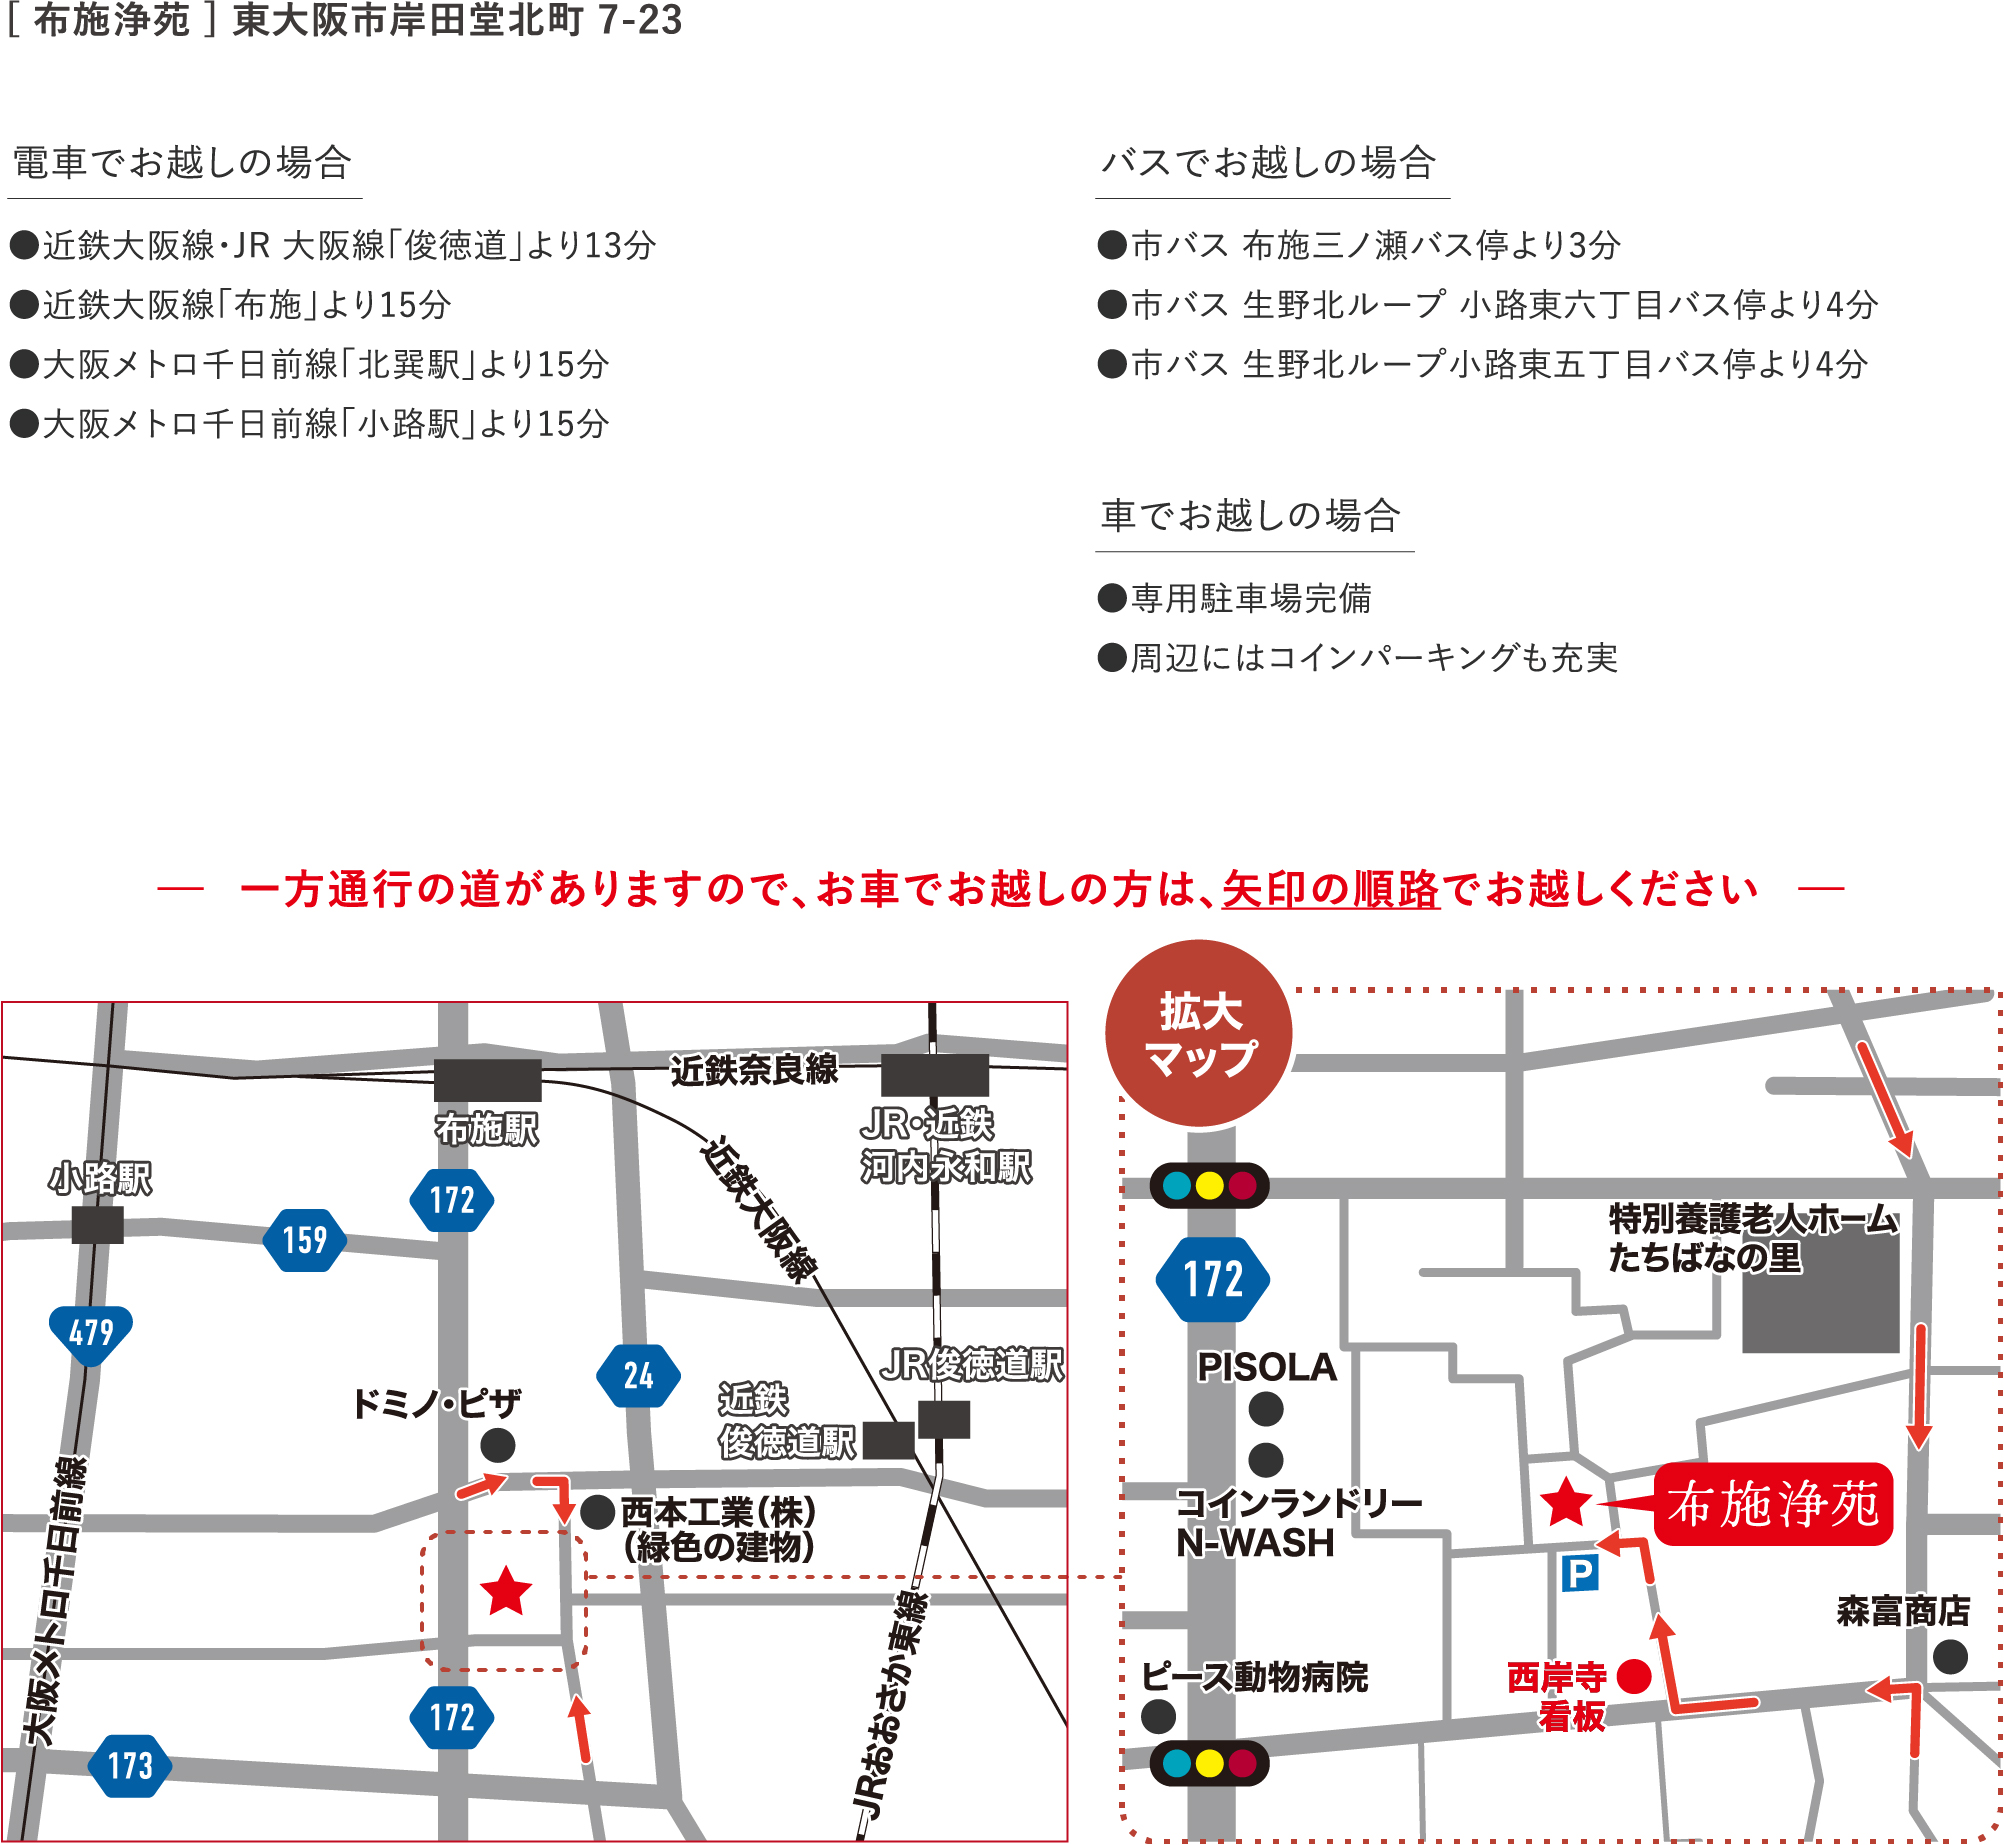 電車でお越しの場合は、近鉄大阪線・JR 大阪線「俊徳道」より13分、近鉄大阪線「布施」より15分、大阪メトロ千日前線「北巽駅」より15分 、大阪メトロ千日前線「小路駅」より15分。バスでお越しの場合は、市バス 布施三ノ瀬バス停より3分、市バス 生野北ループ 小路東六丁目バス停より4分、市バス 生野北ループ小路東五丁目バス停より4分。車でお越しの場合は、専用駐車場完備、周辺にはコインパーキングも充実